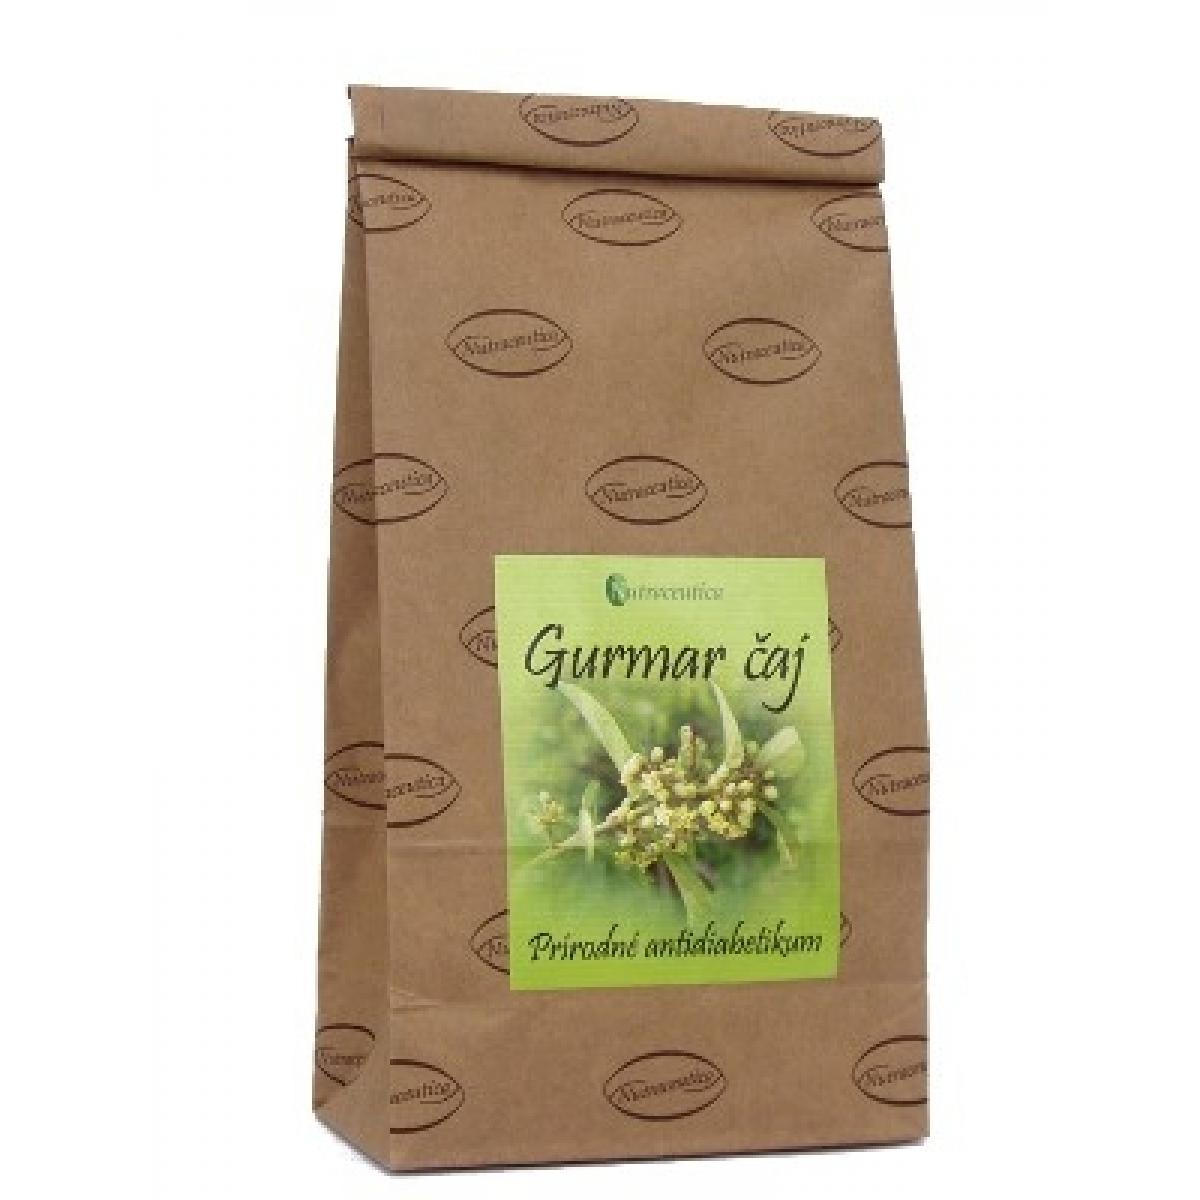 Gurmar čaj, prírodné antidiabetikum - 150g